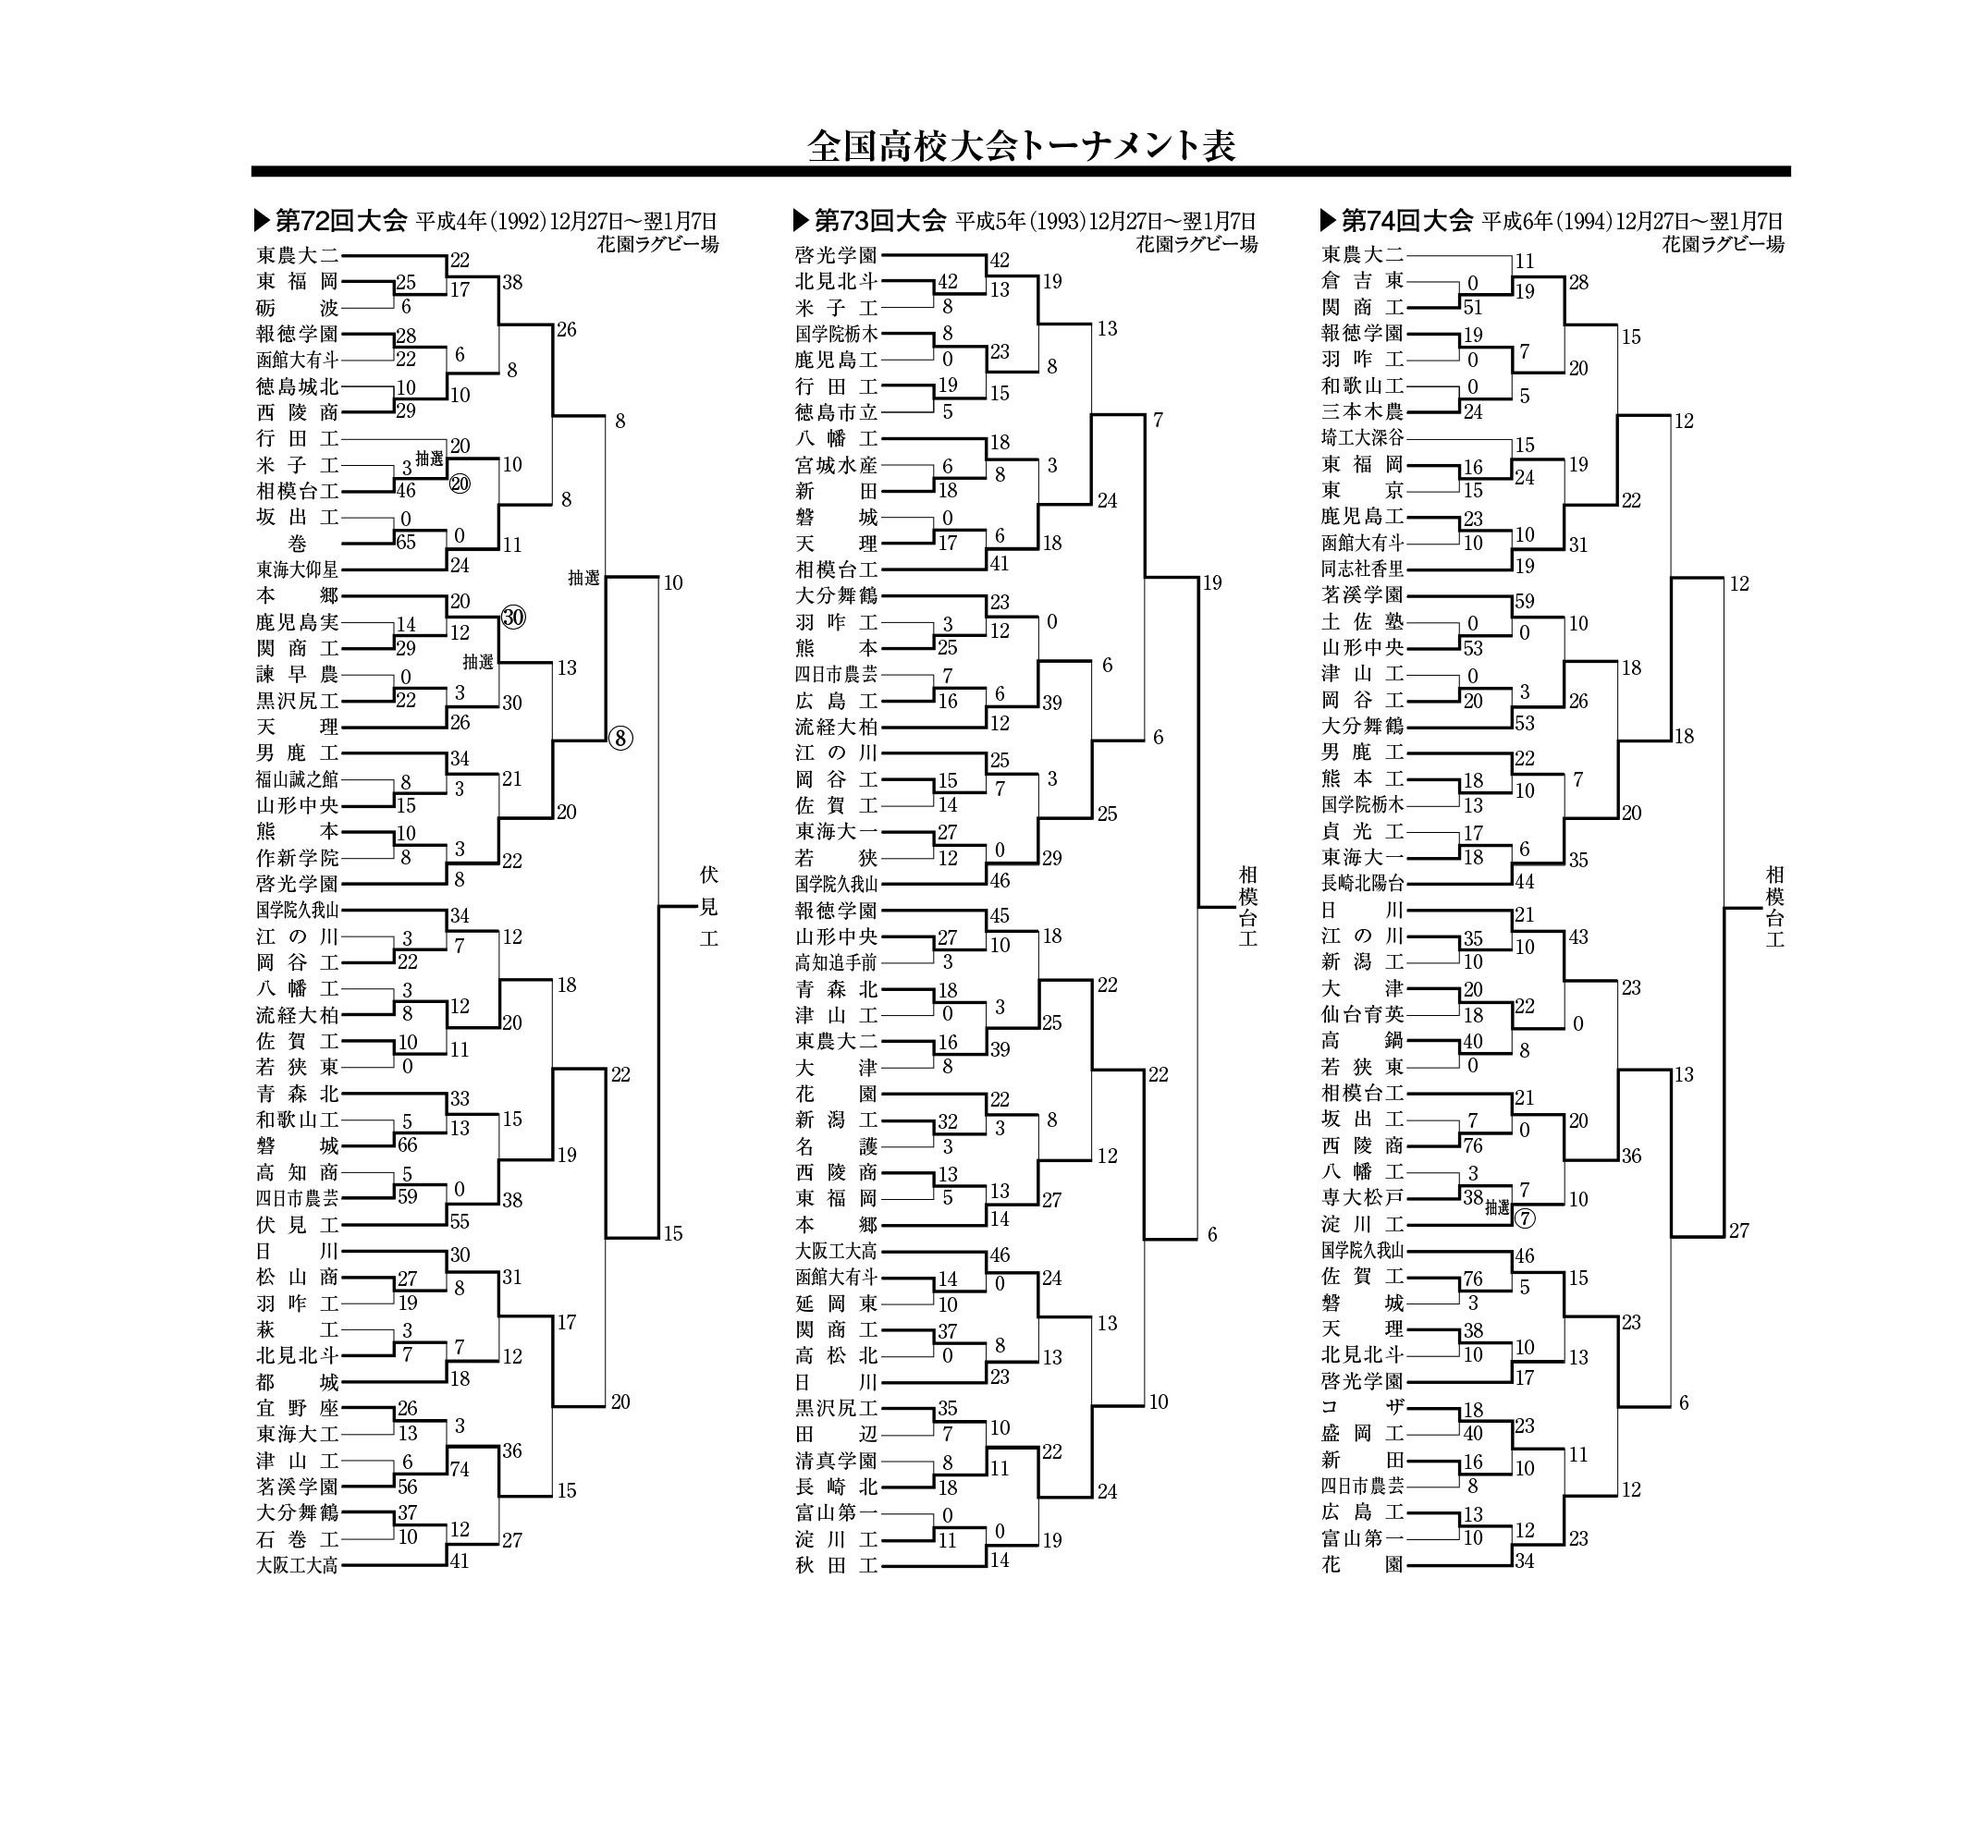 全国高校大会トーナメント表(第72回～74回)